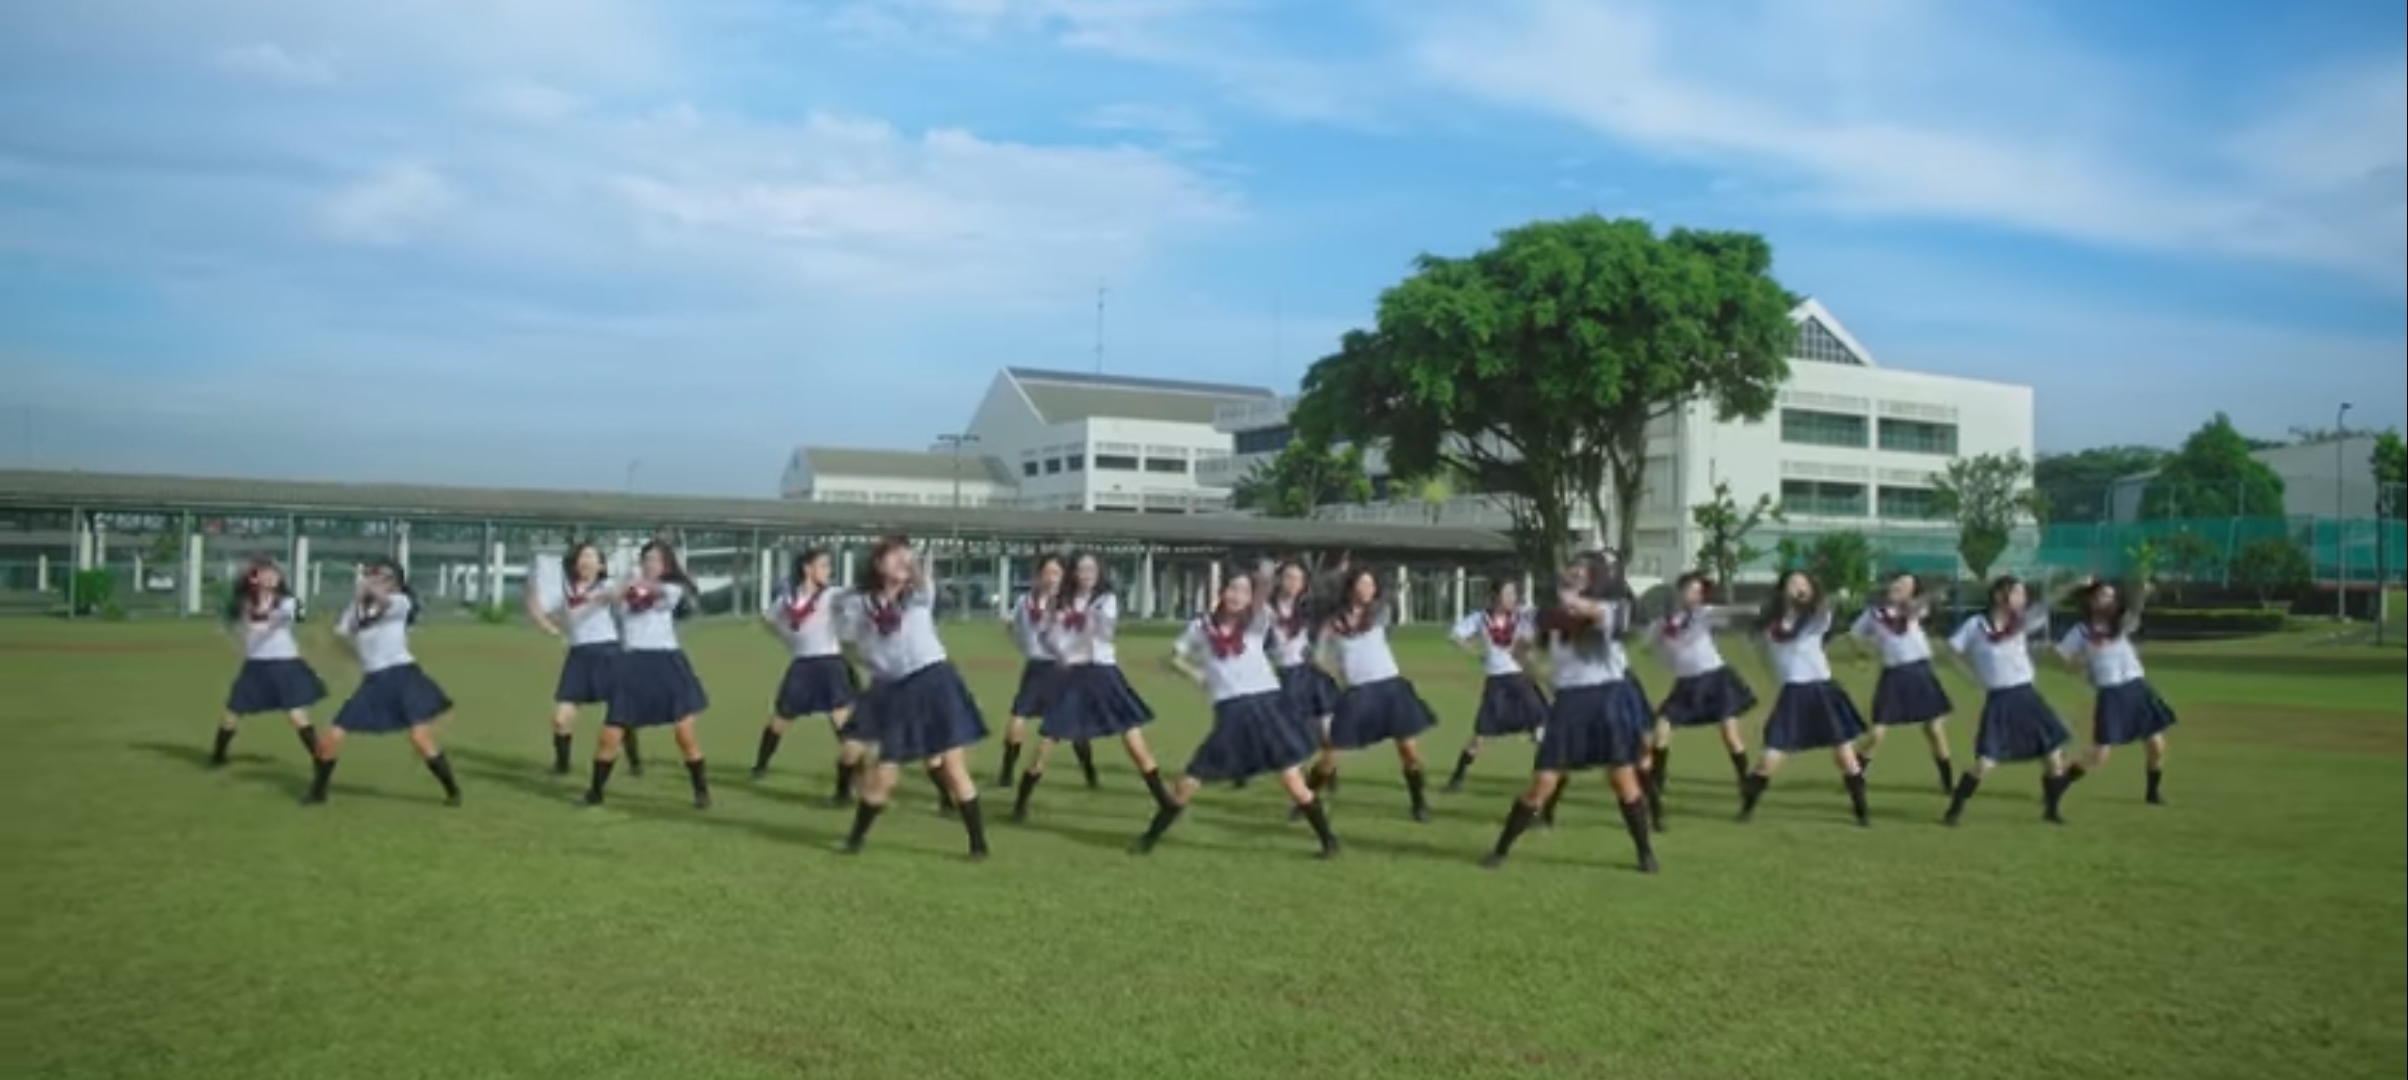 Lirik Lagu JKT48 Masa Depan yang Menyilaukan Mata (Mirai ga Me ni Shimiru)